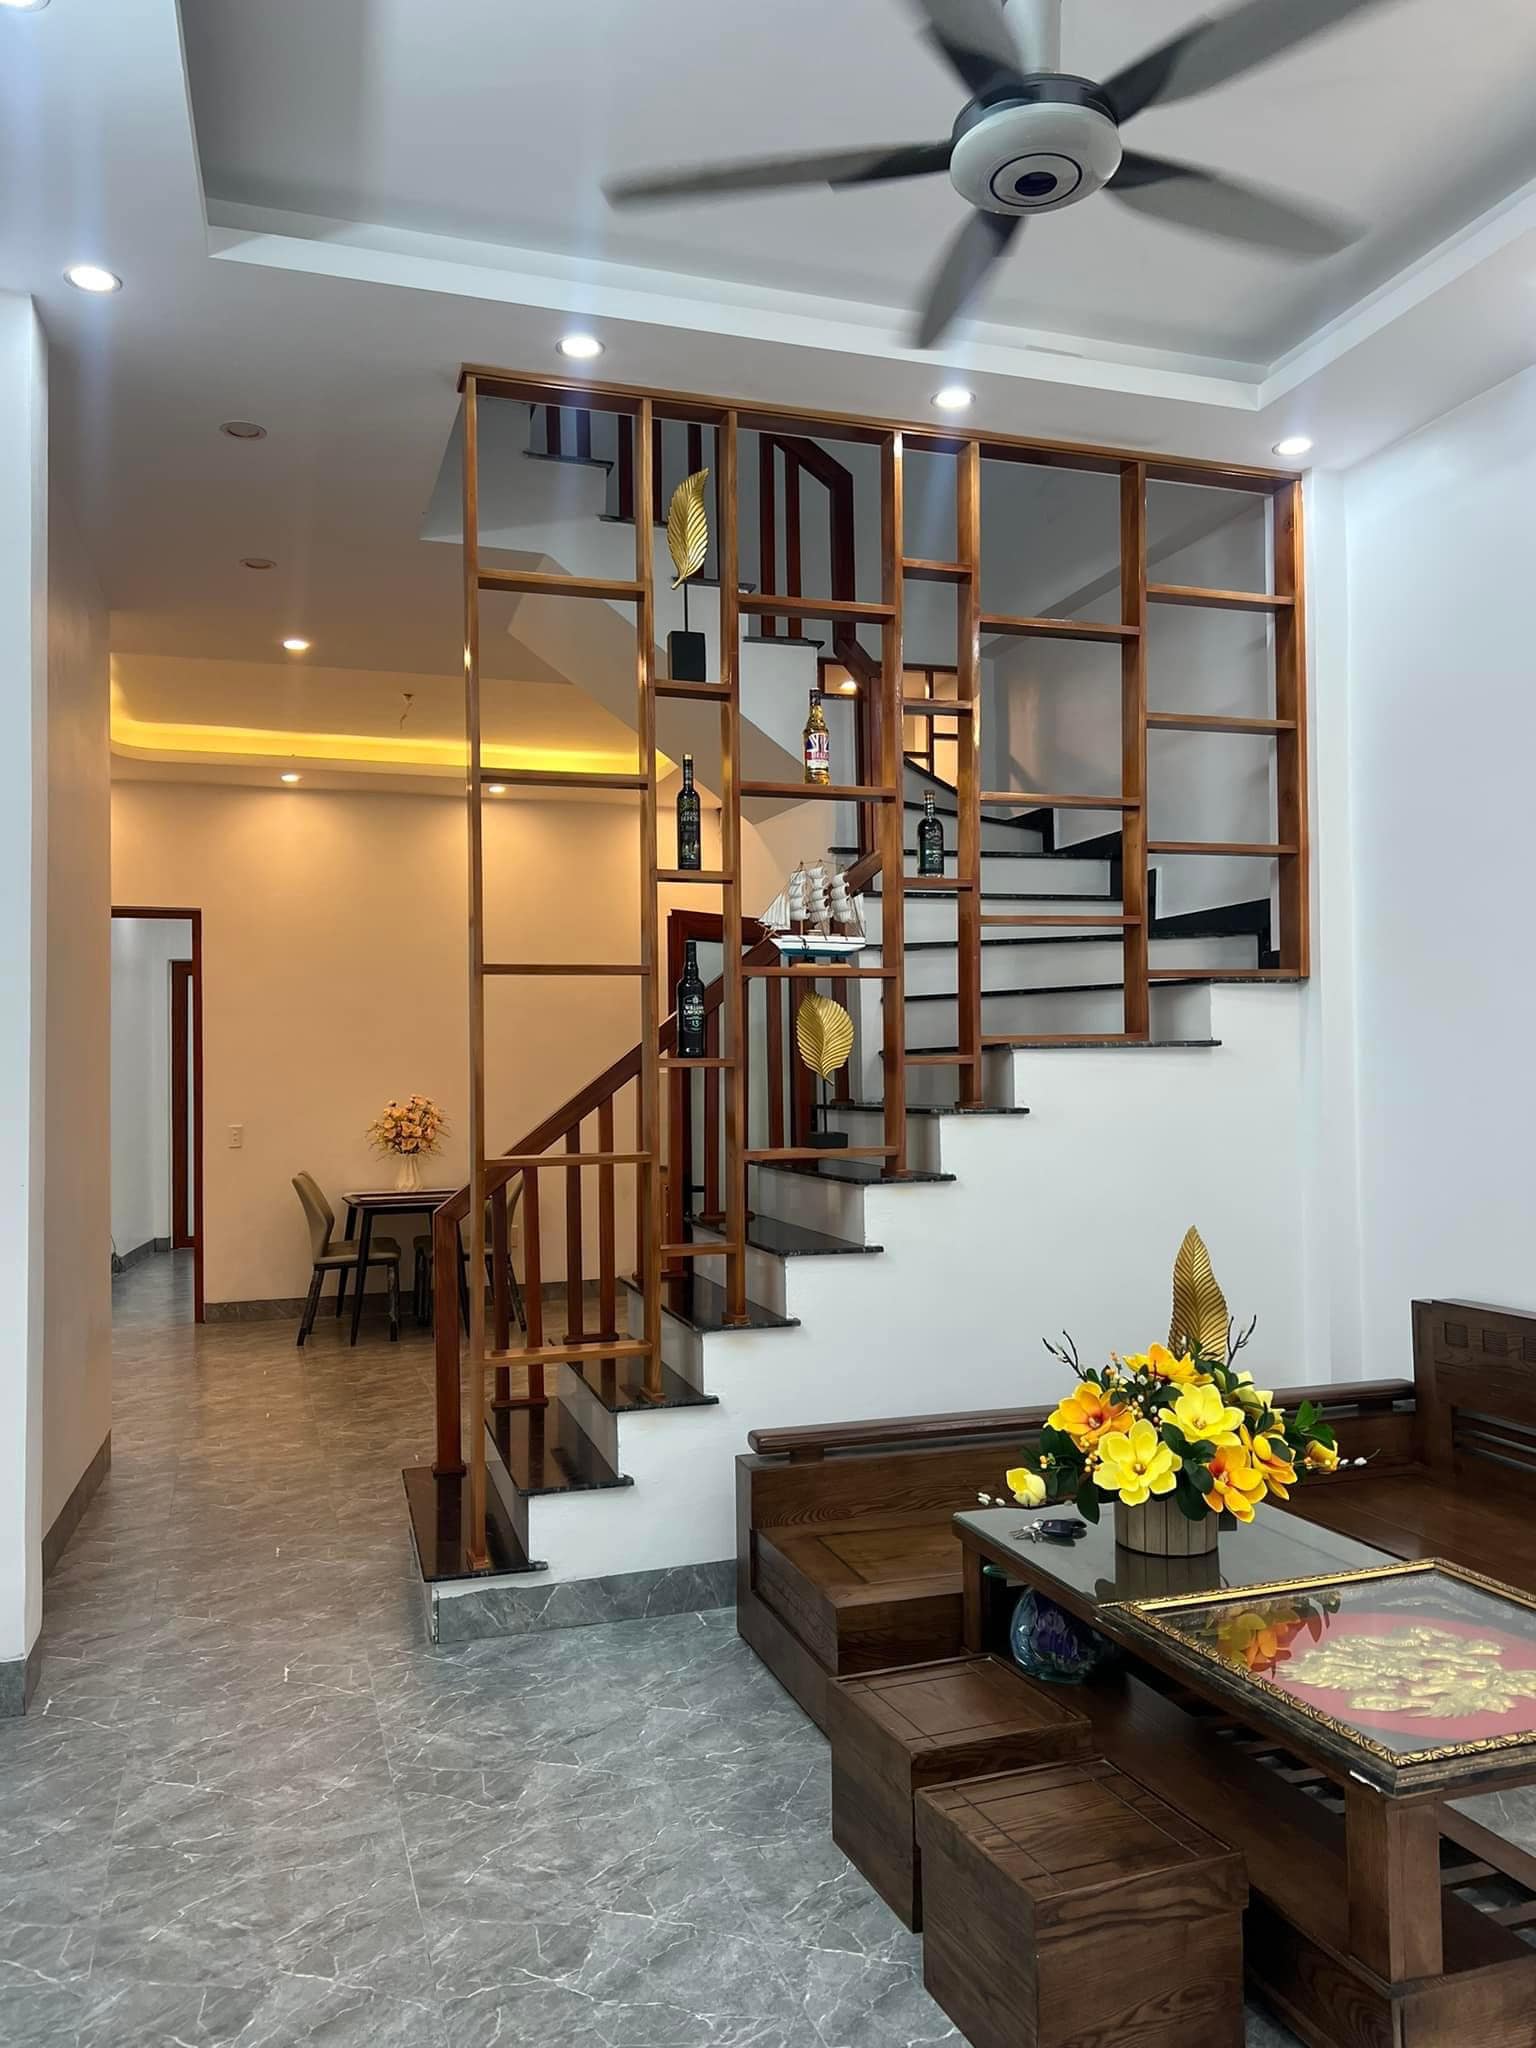 Bán nhà 2 tầng ngõ phố An Ninh, TP HD, 62.5m2, 3 ngủ, thiết kế đẹp, giá tốt, trung tâm 7